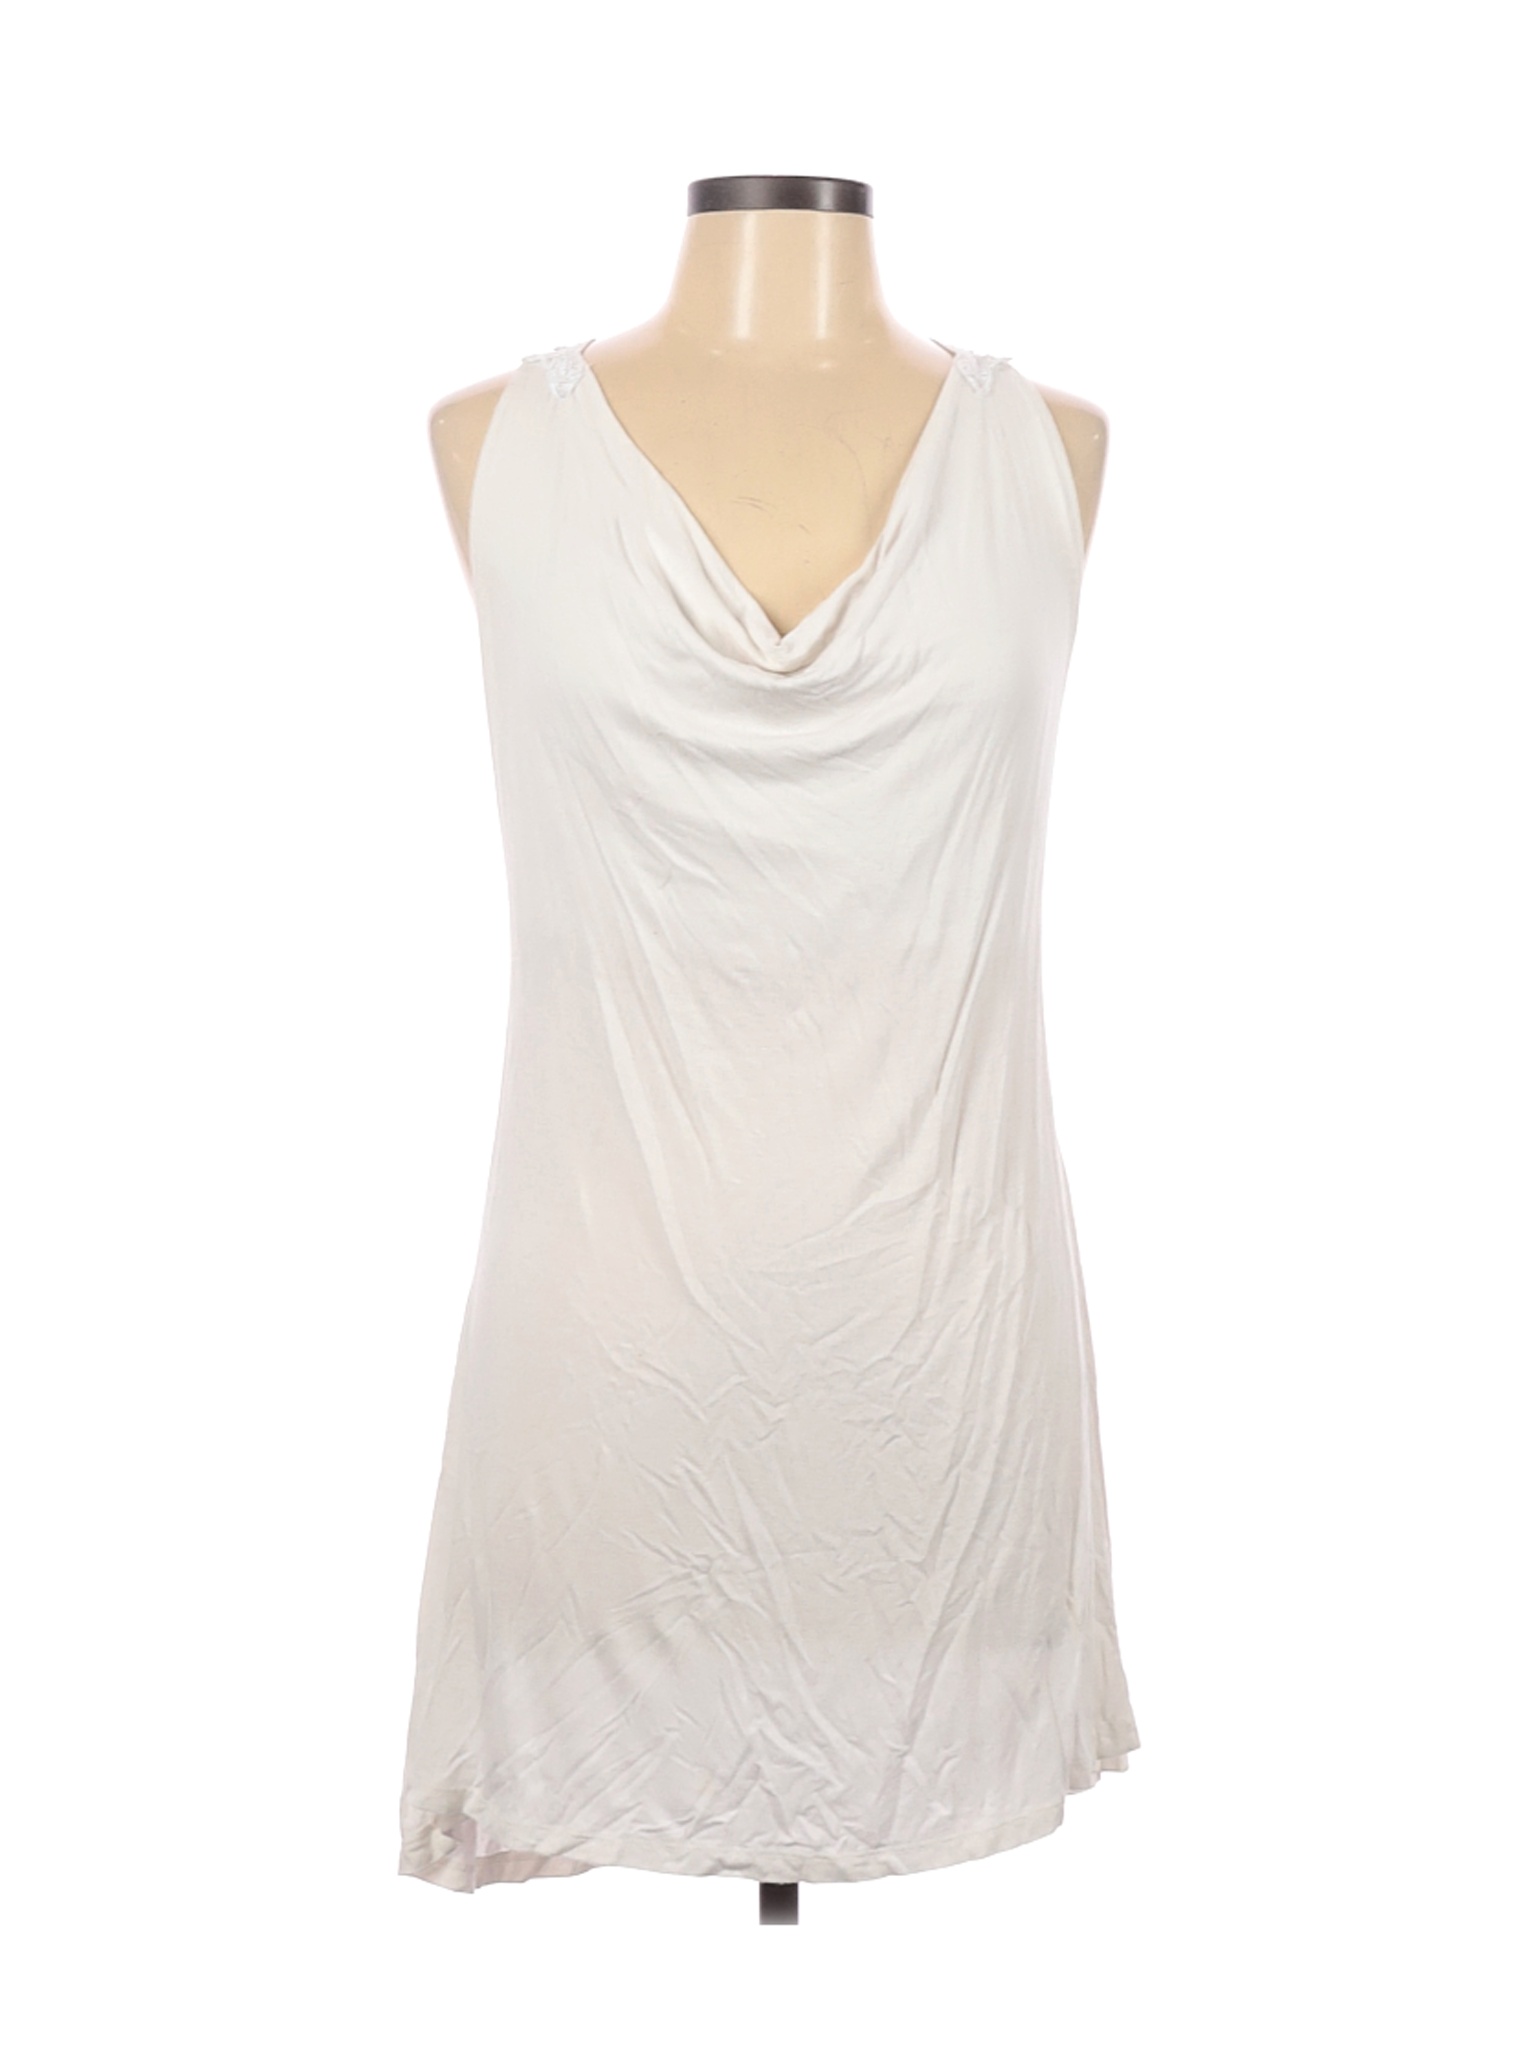 West Kei Women White Casual Dress L | eBay